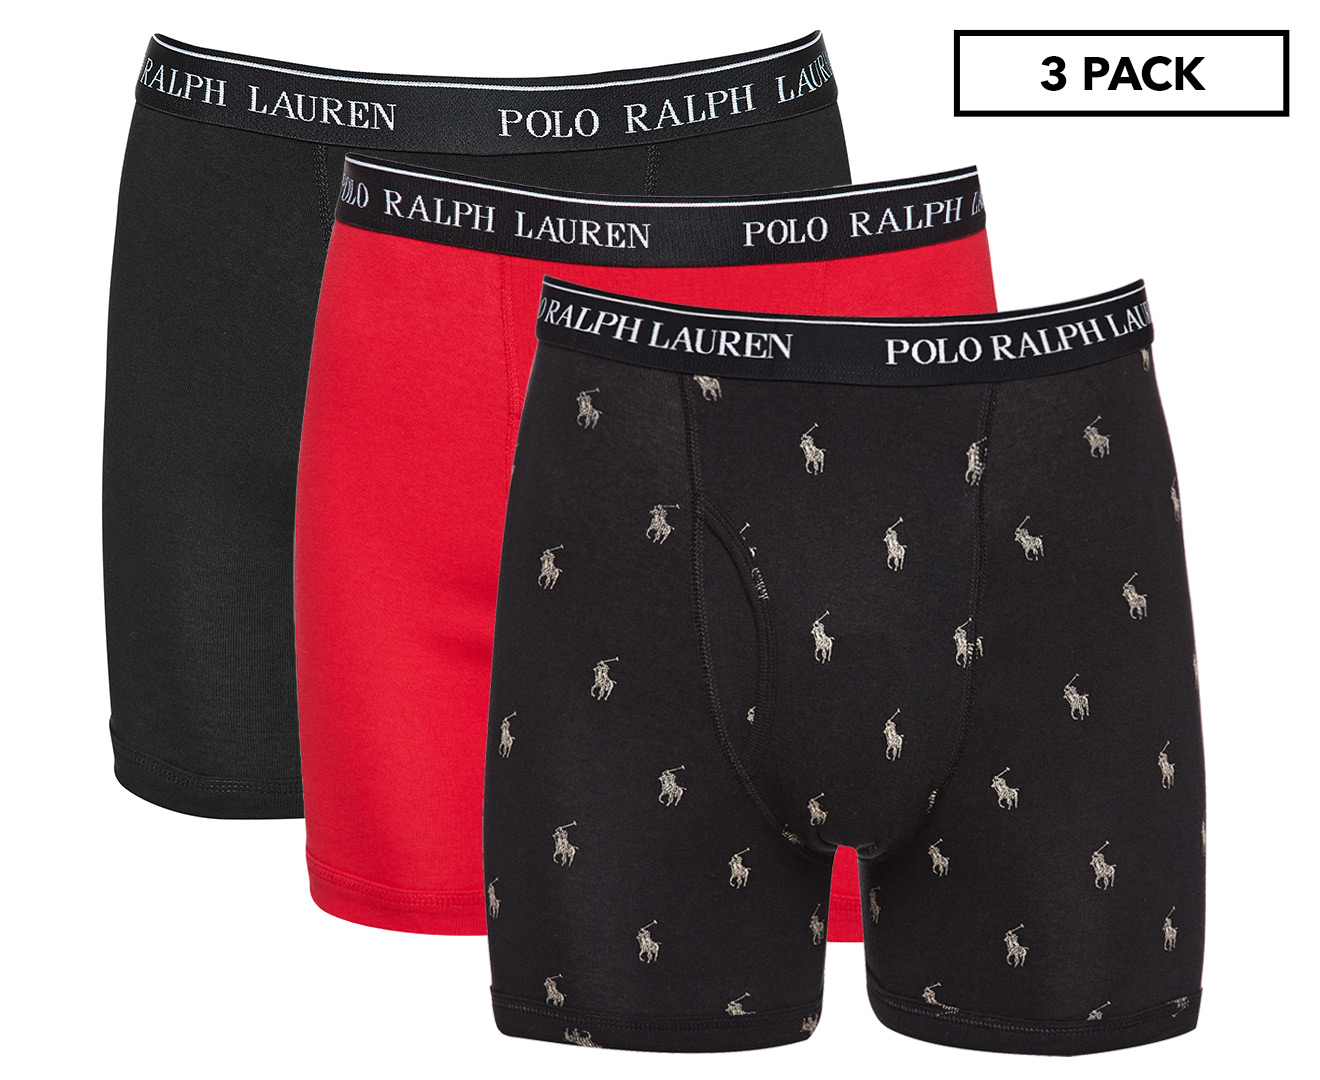 Polo Ralph Lauren Men's Classic Fit Boxer Briefs 3-Pack - Black/Red/Logo  Print | Catch.com.au